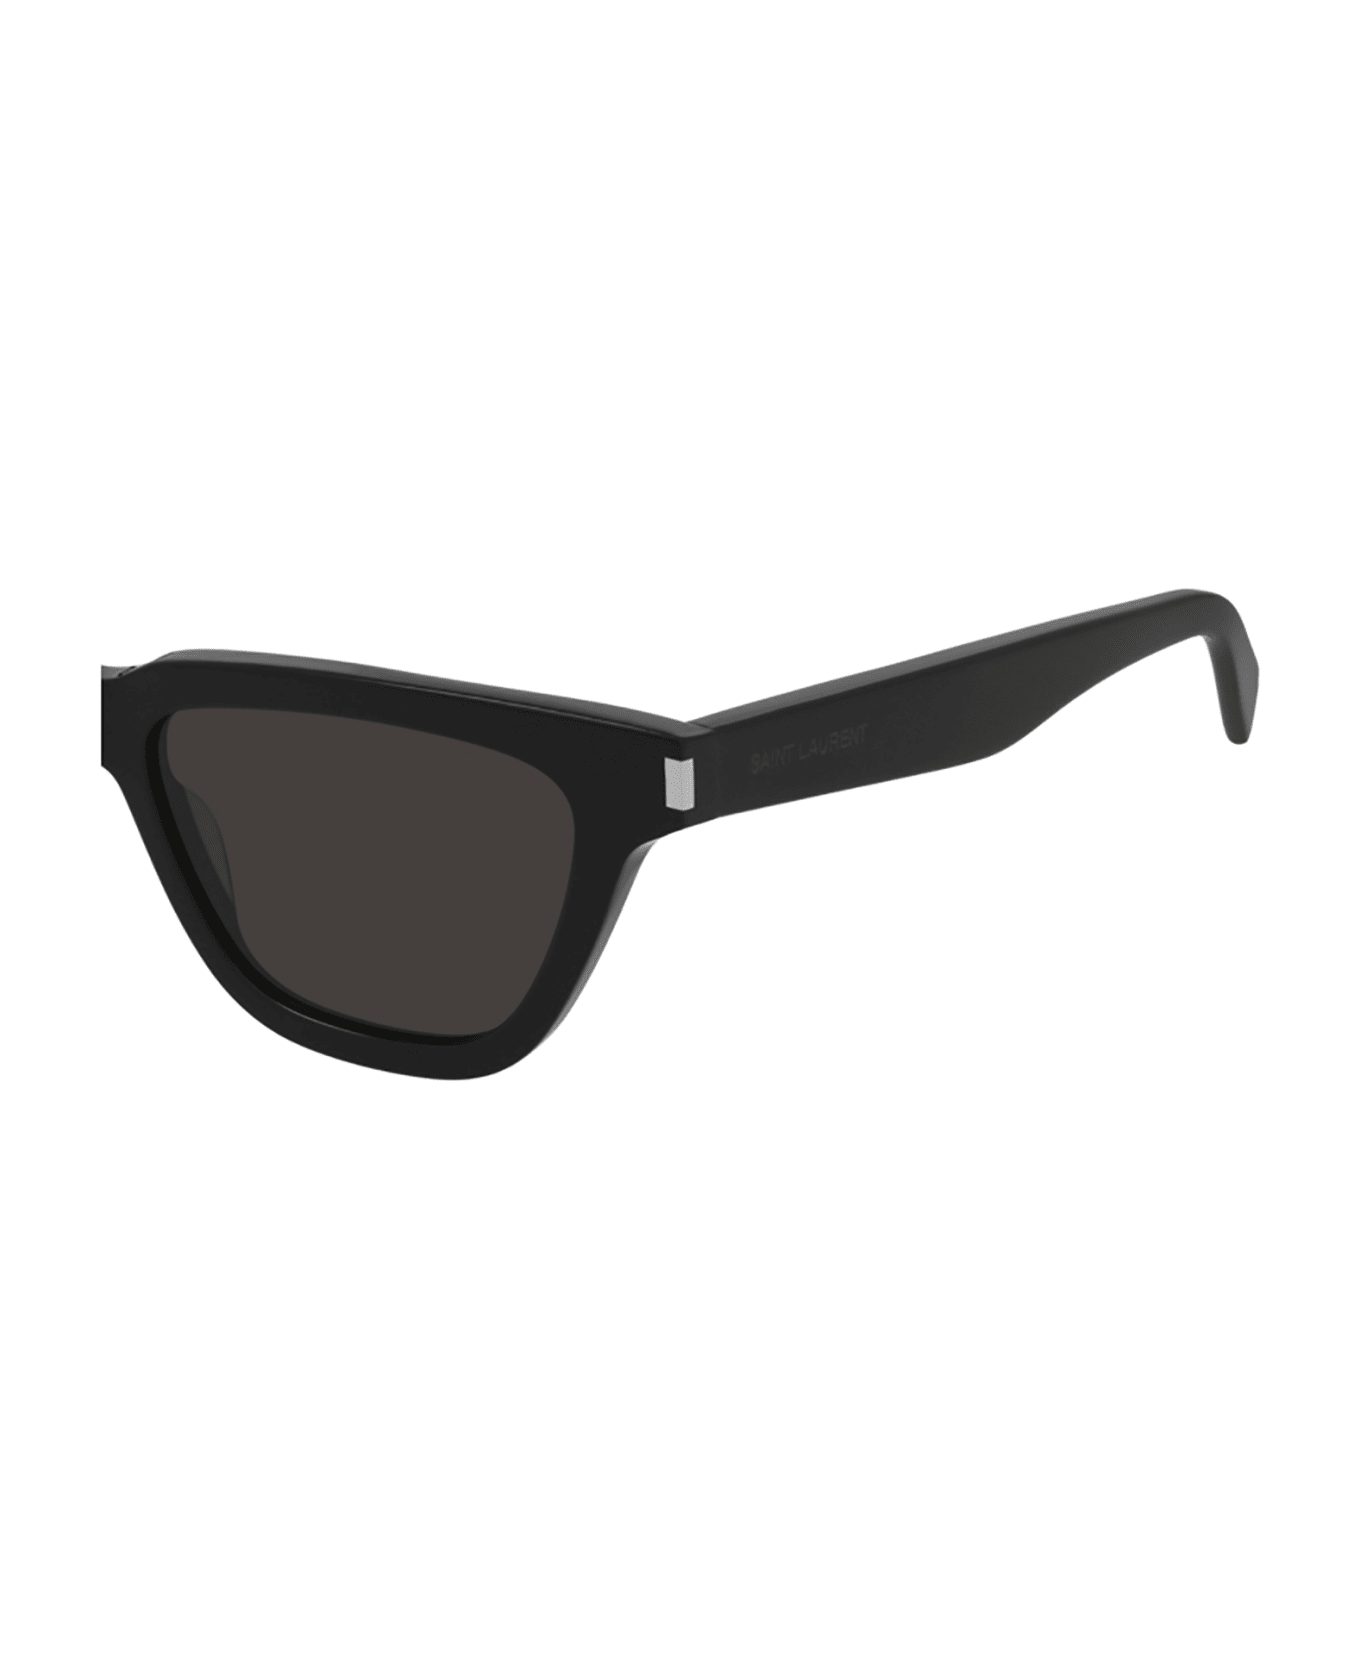 Saint Laurent Eyewear SL 462 SULPICE Sunglasses - Black Black Black